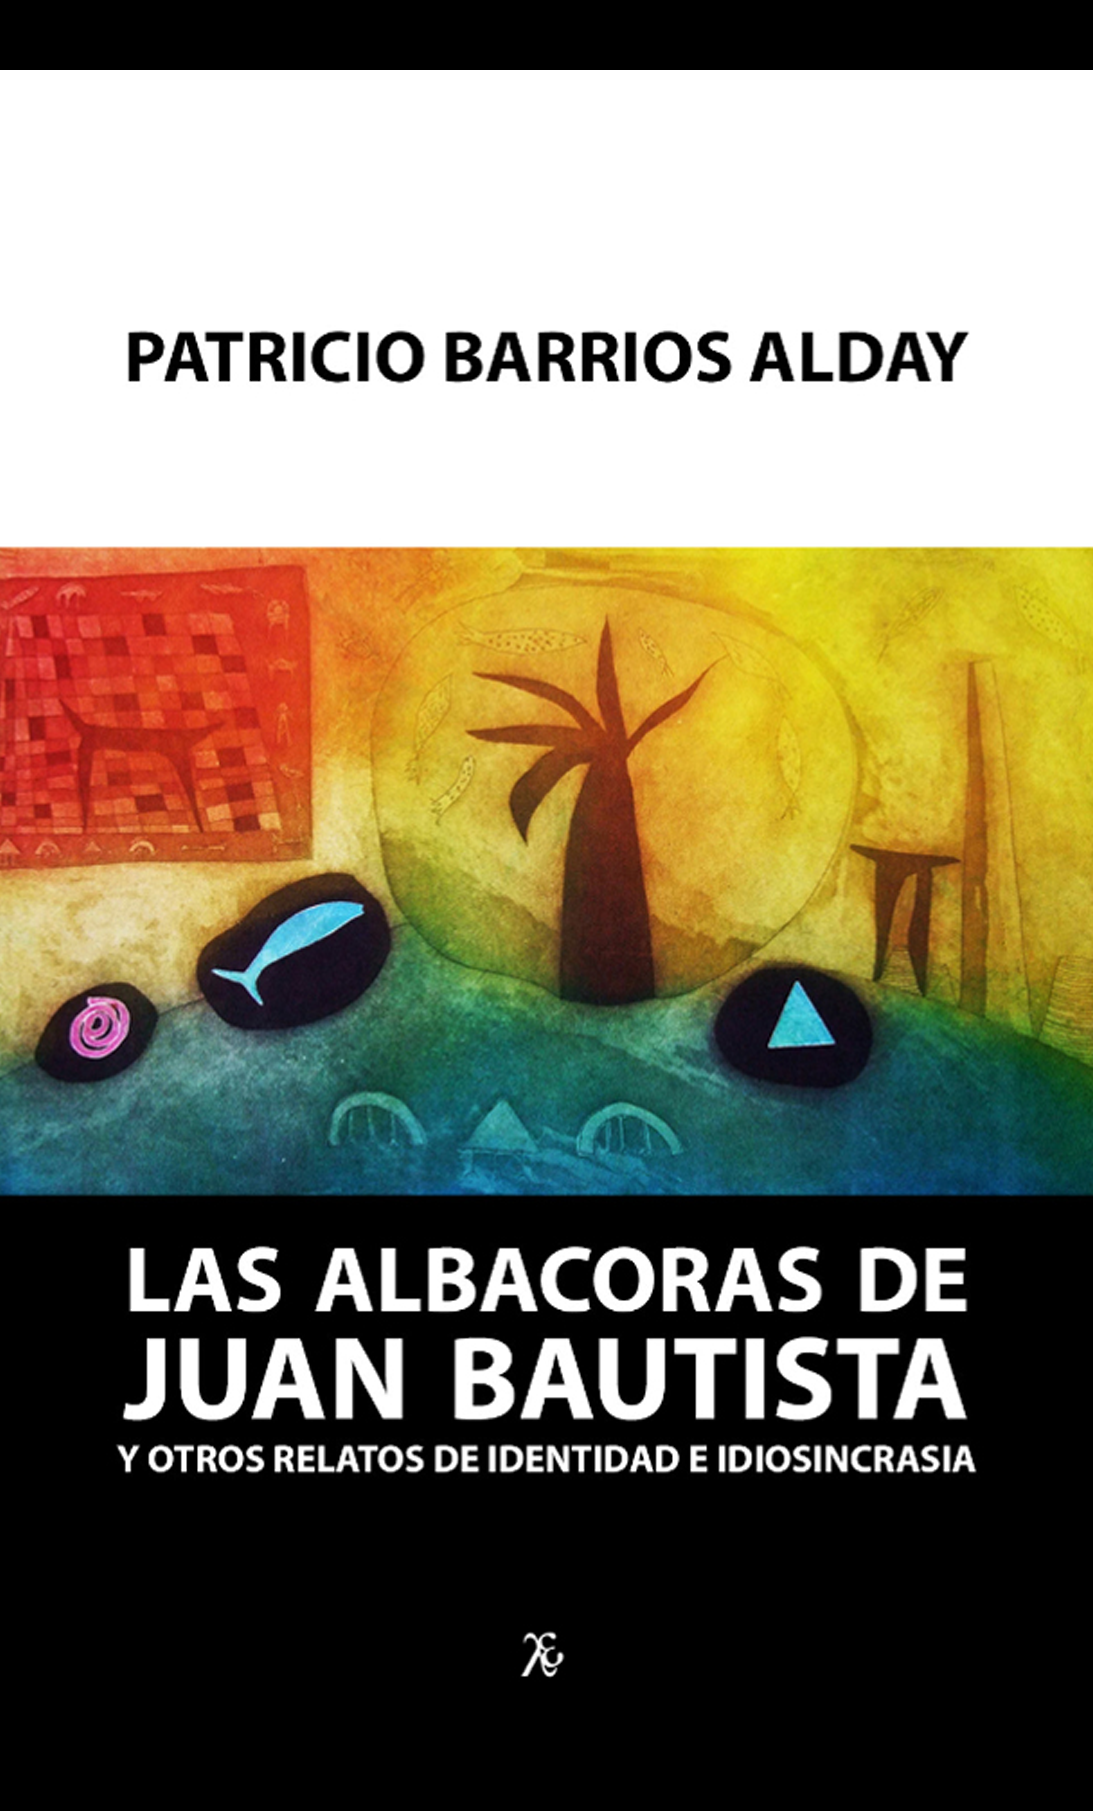 Las albacoras de Juan Bautista